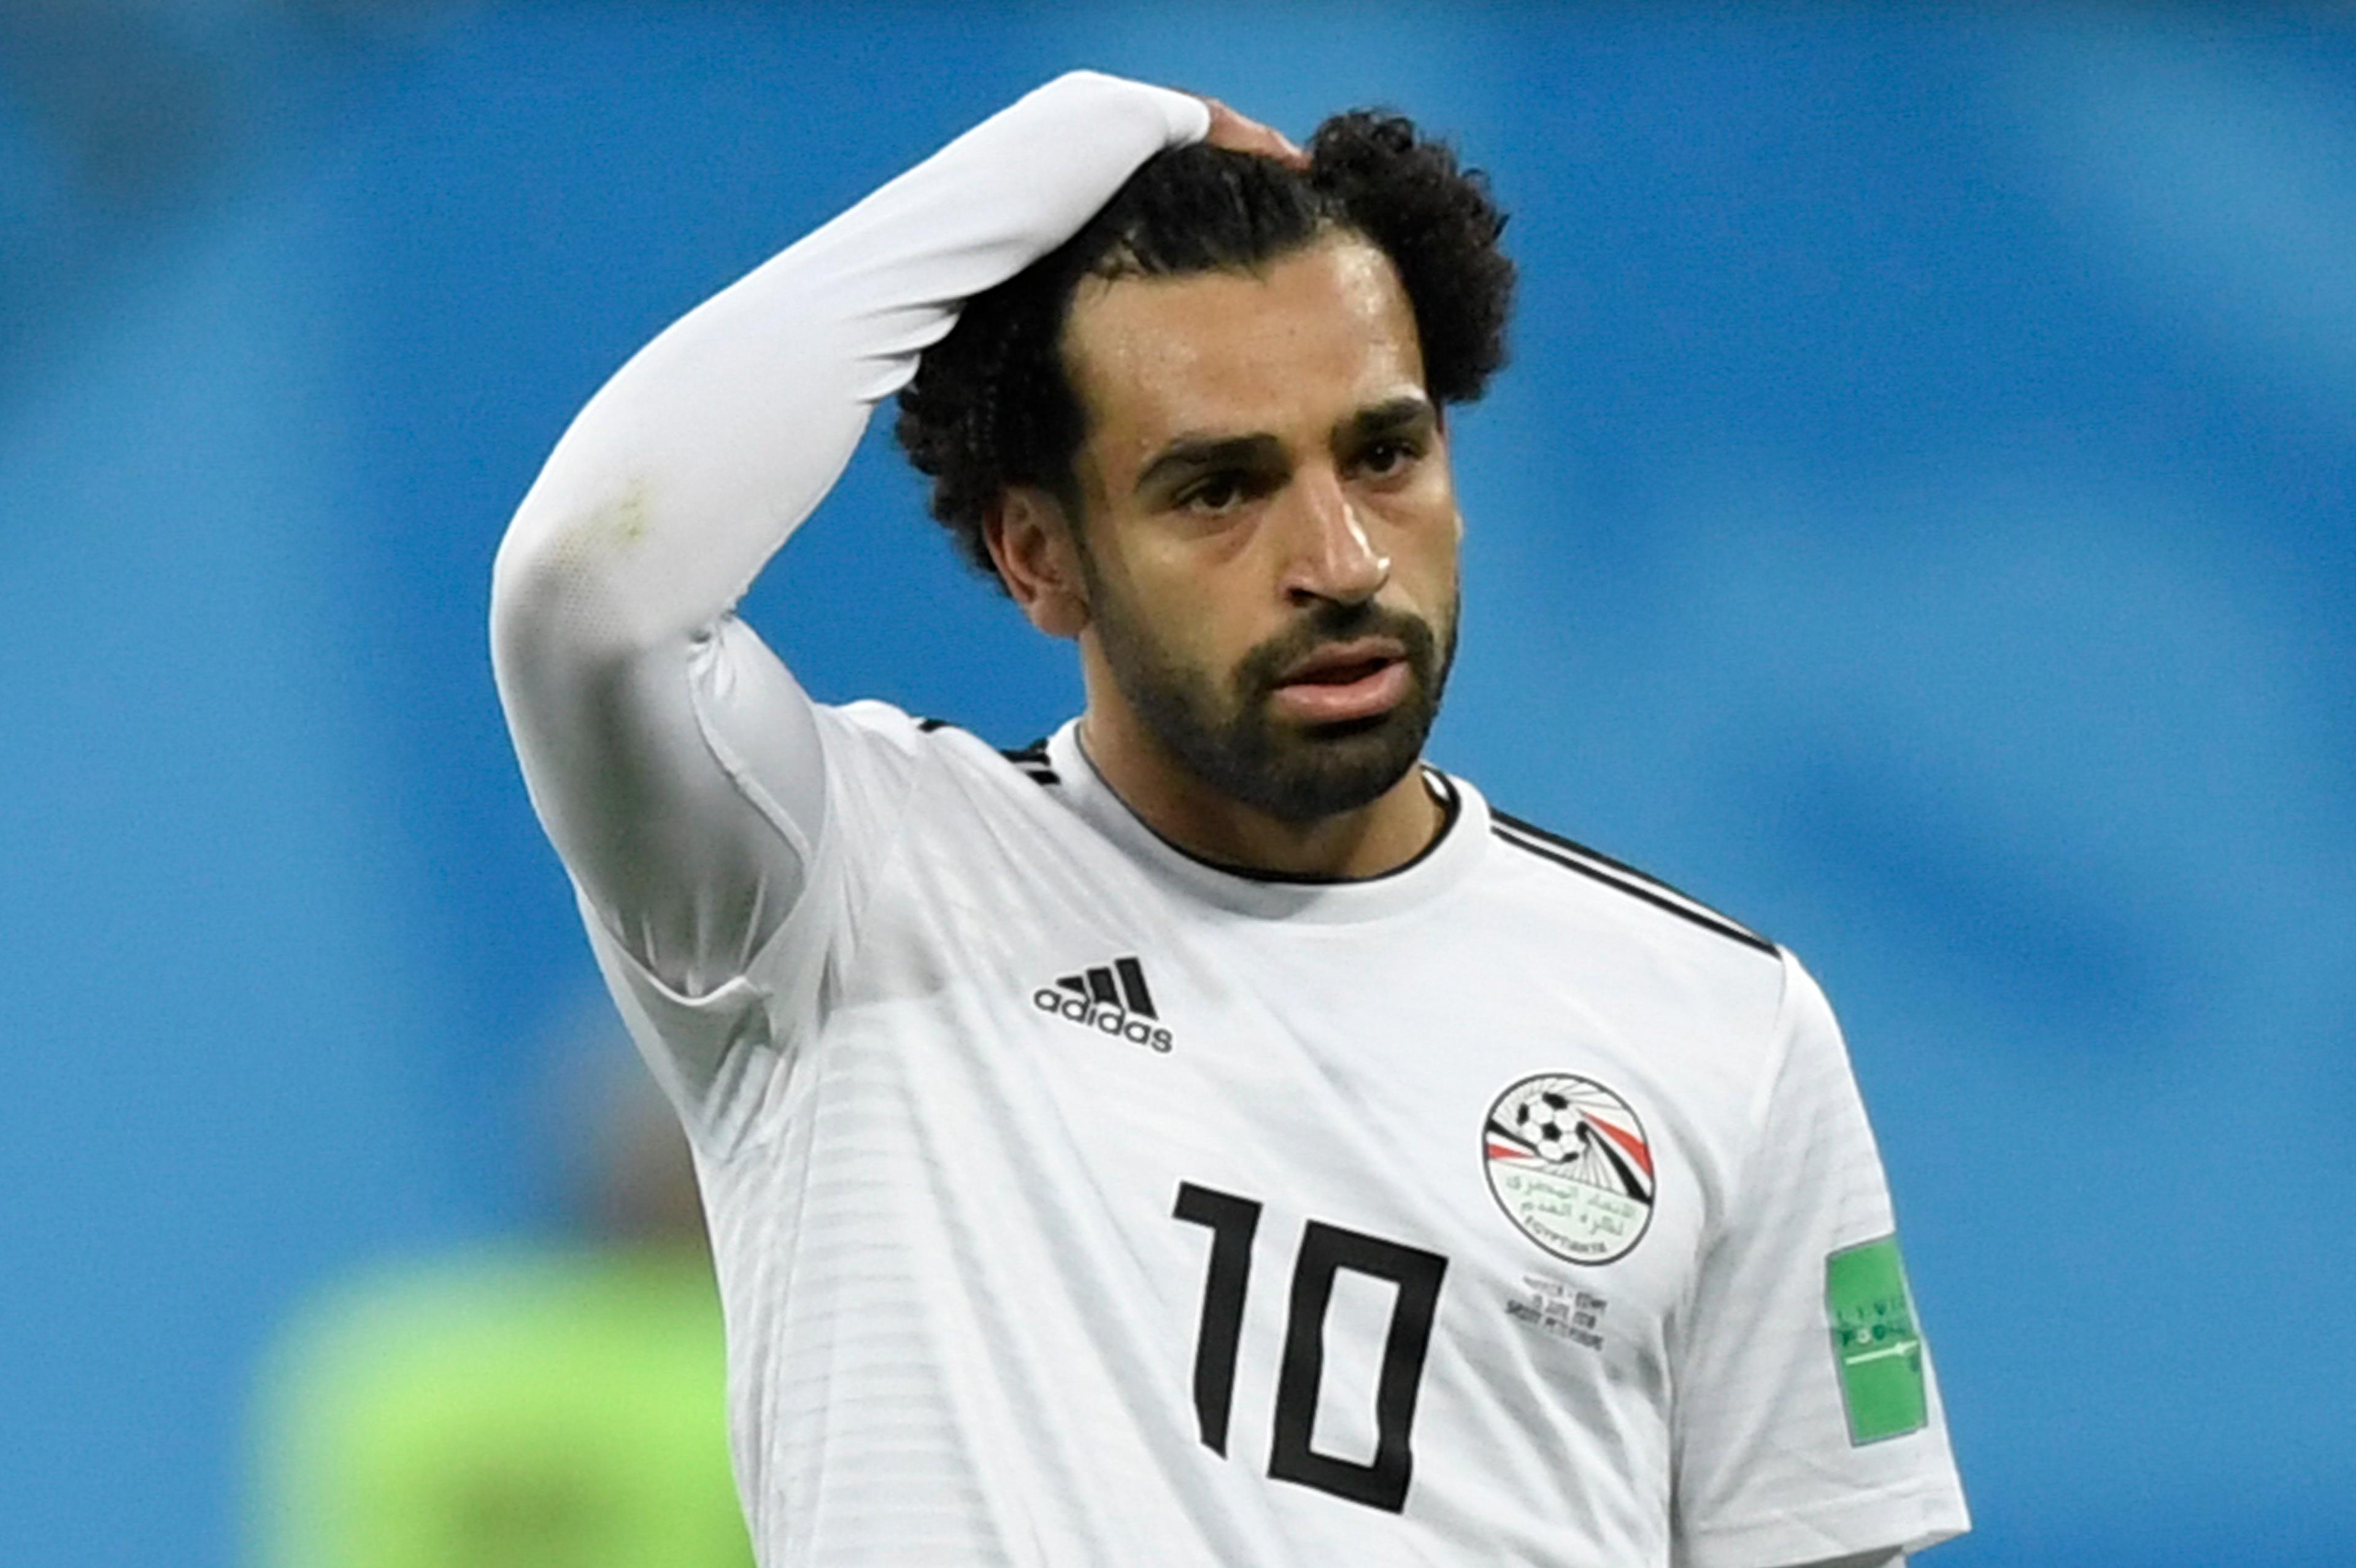 Egipat ispao, ali Salah ipak dobio priznanje na Svjetskom prvenstvu